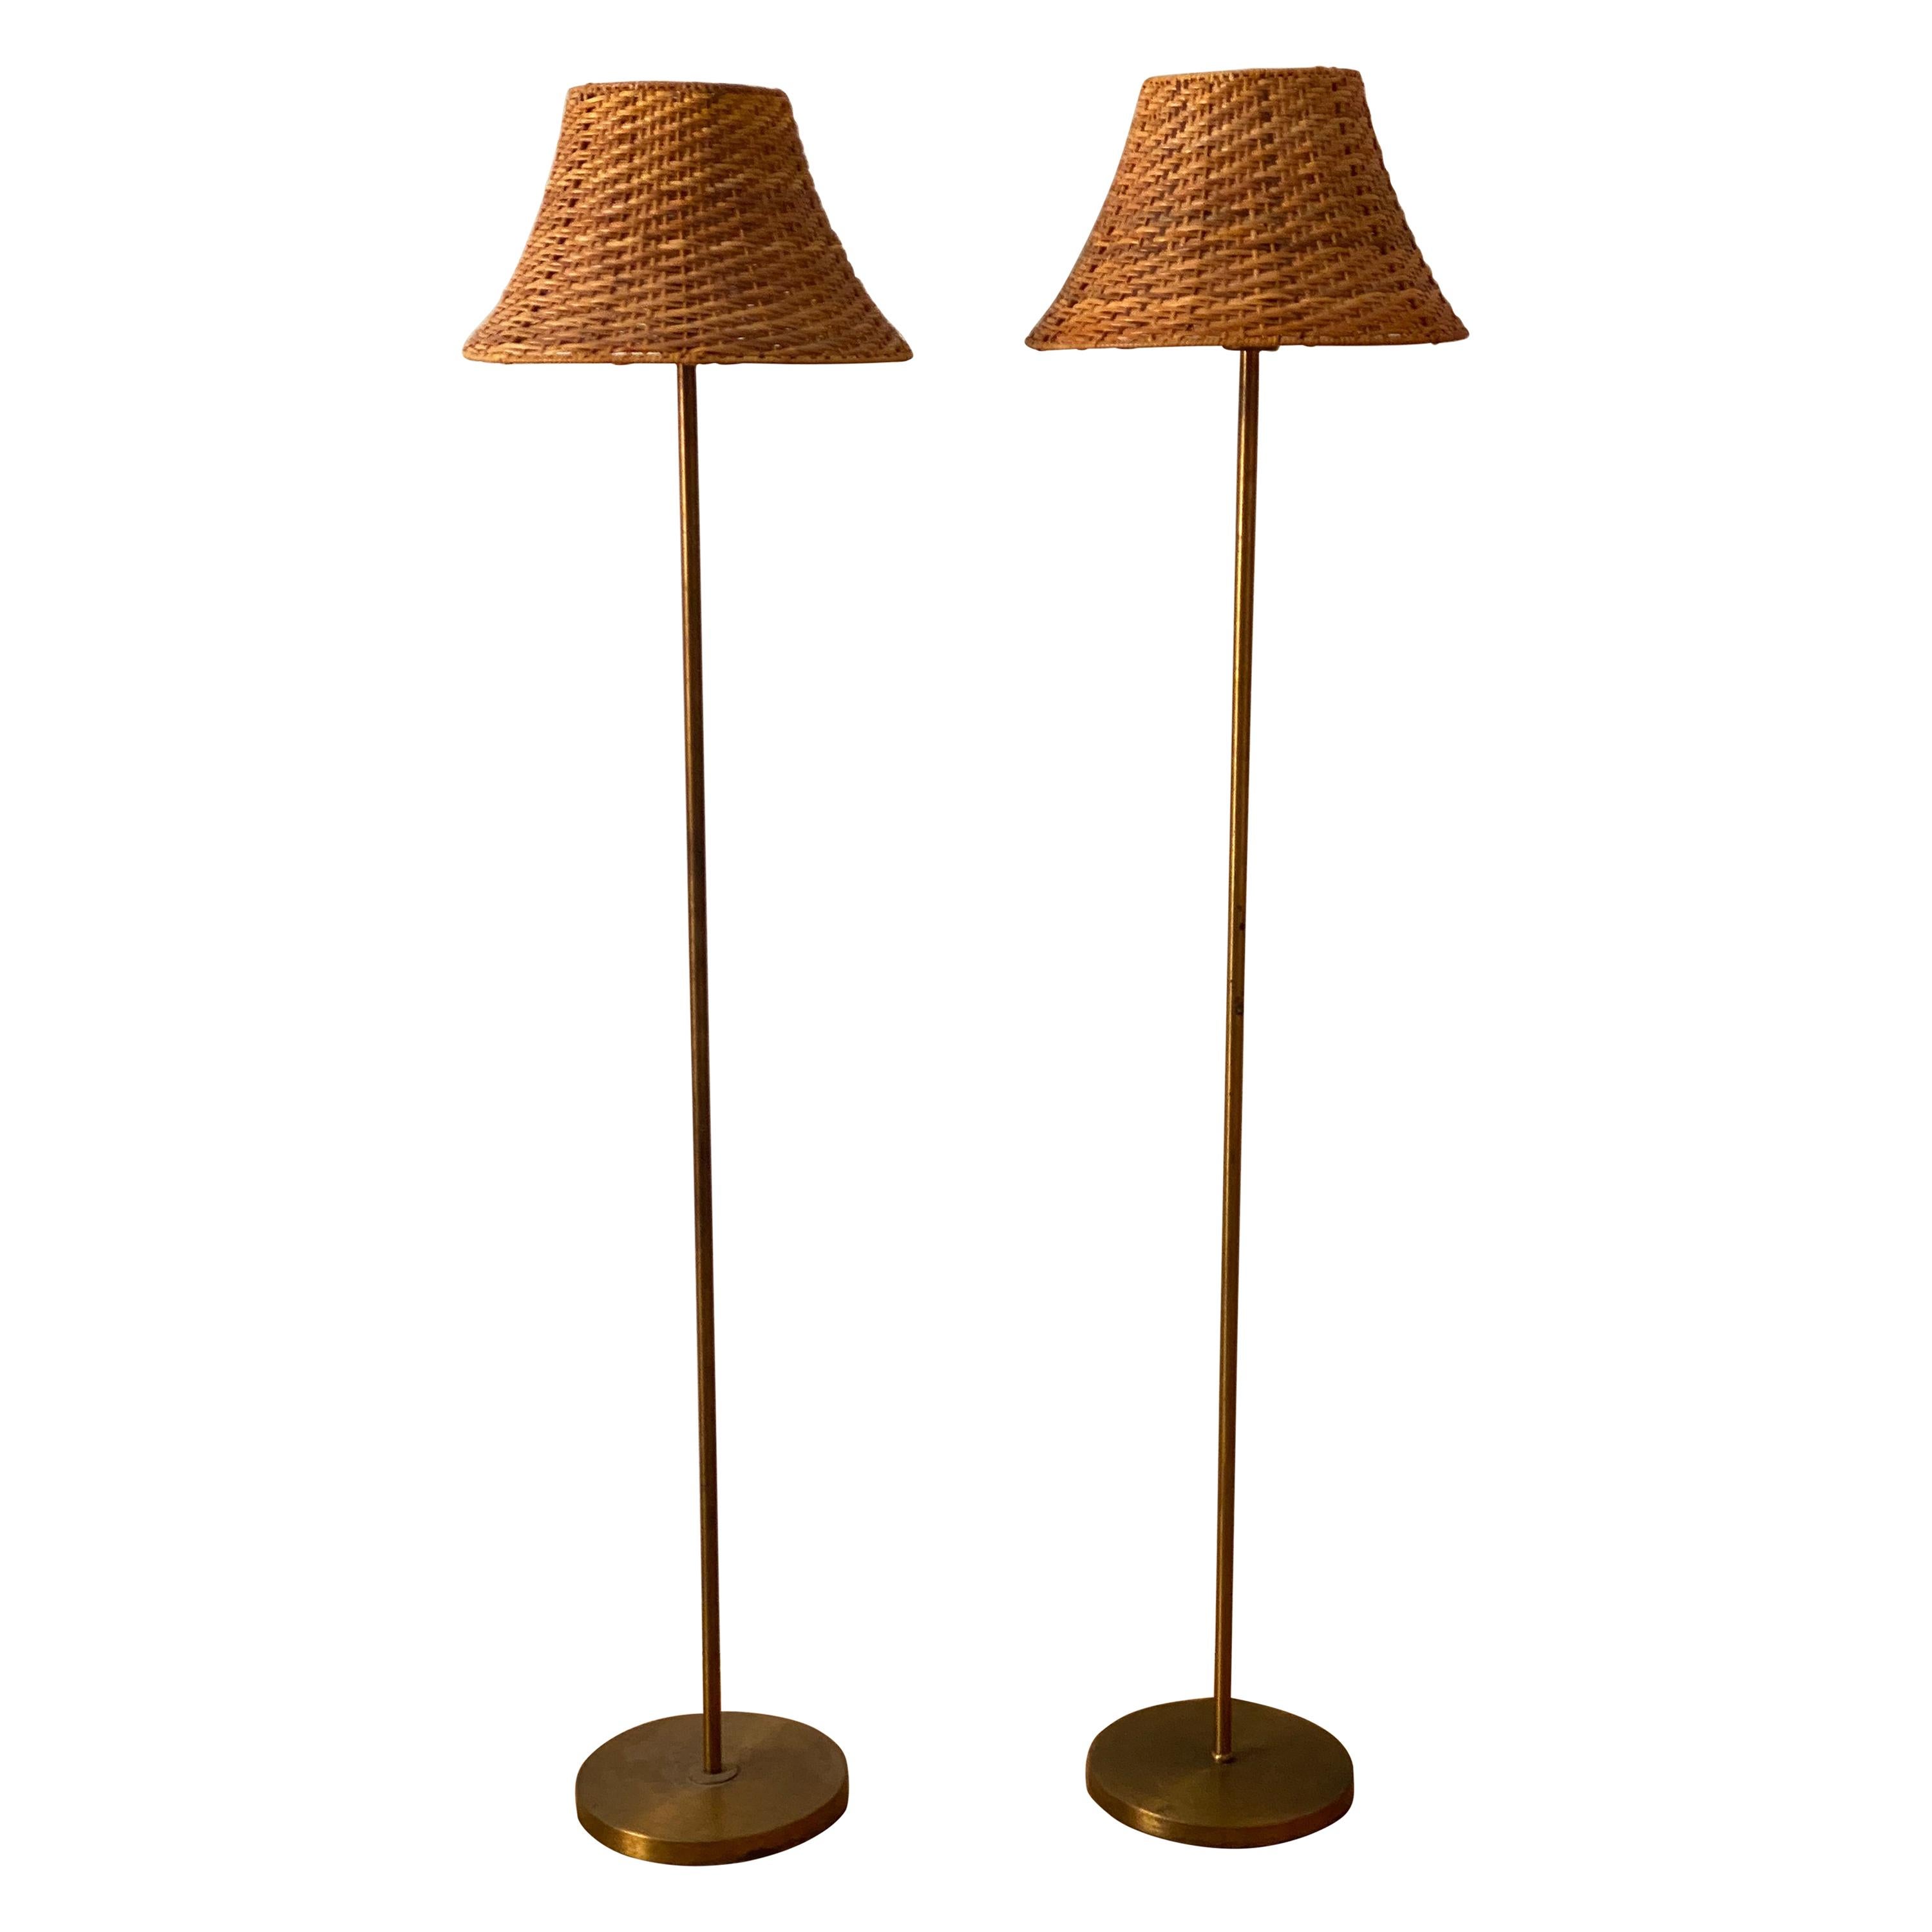 Nordiska Kompaniet Floor Lamps Brass, Matching Brass Floor And Table Lamps